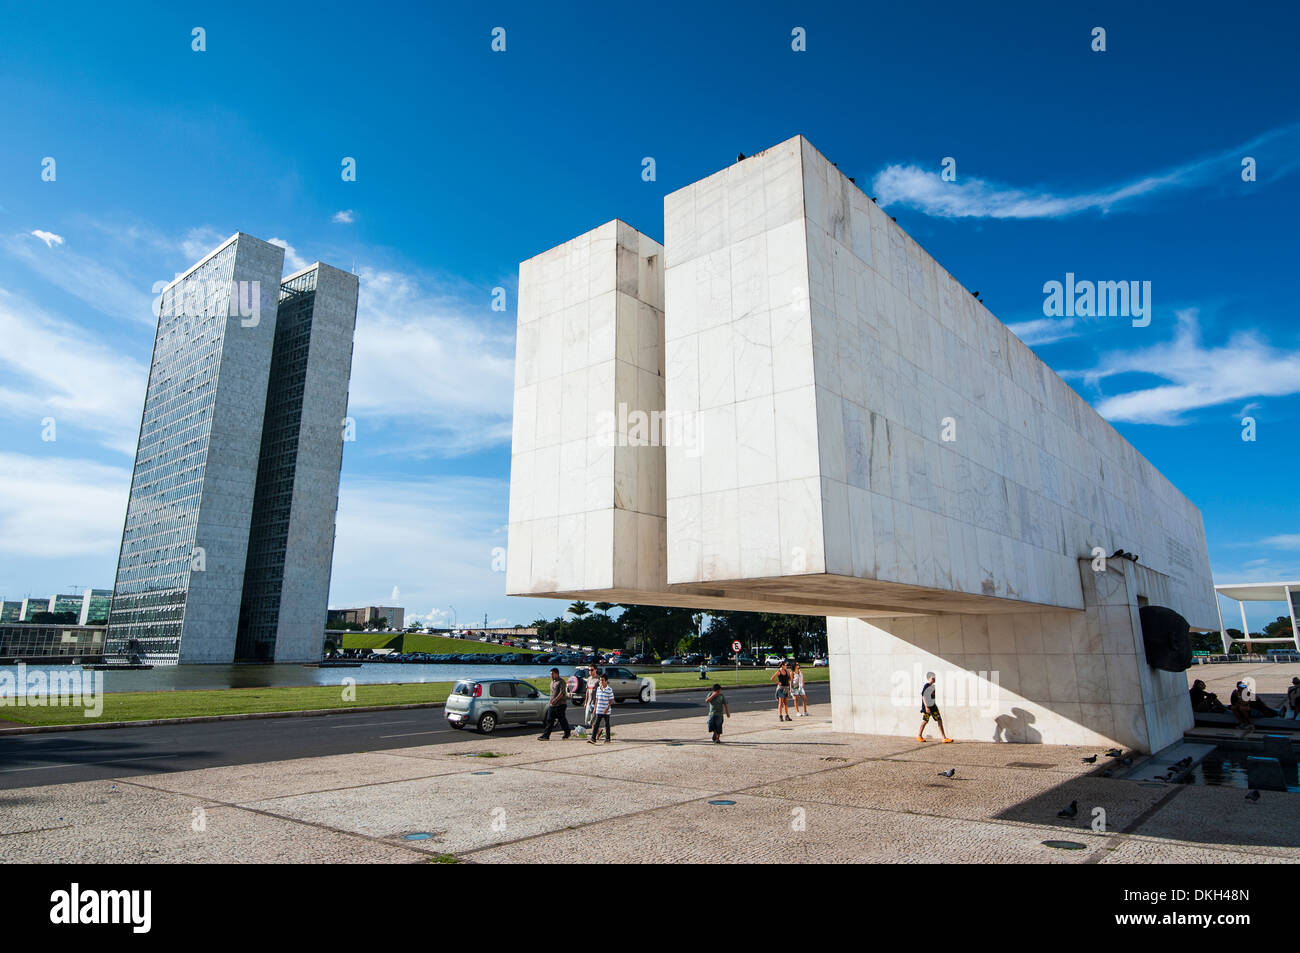 Juscelino Kubitschek Monument de la place des trois pouvoirs, Brasilia, Brésil, Amérique du Sud Banque D'Images